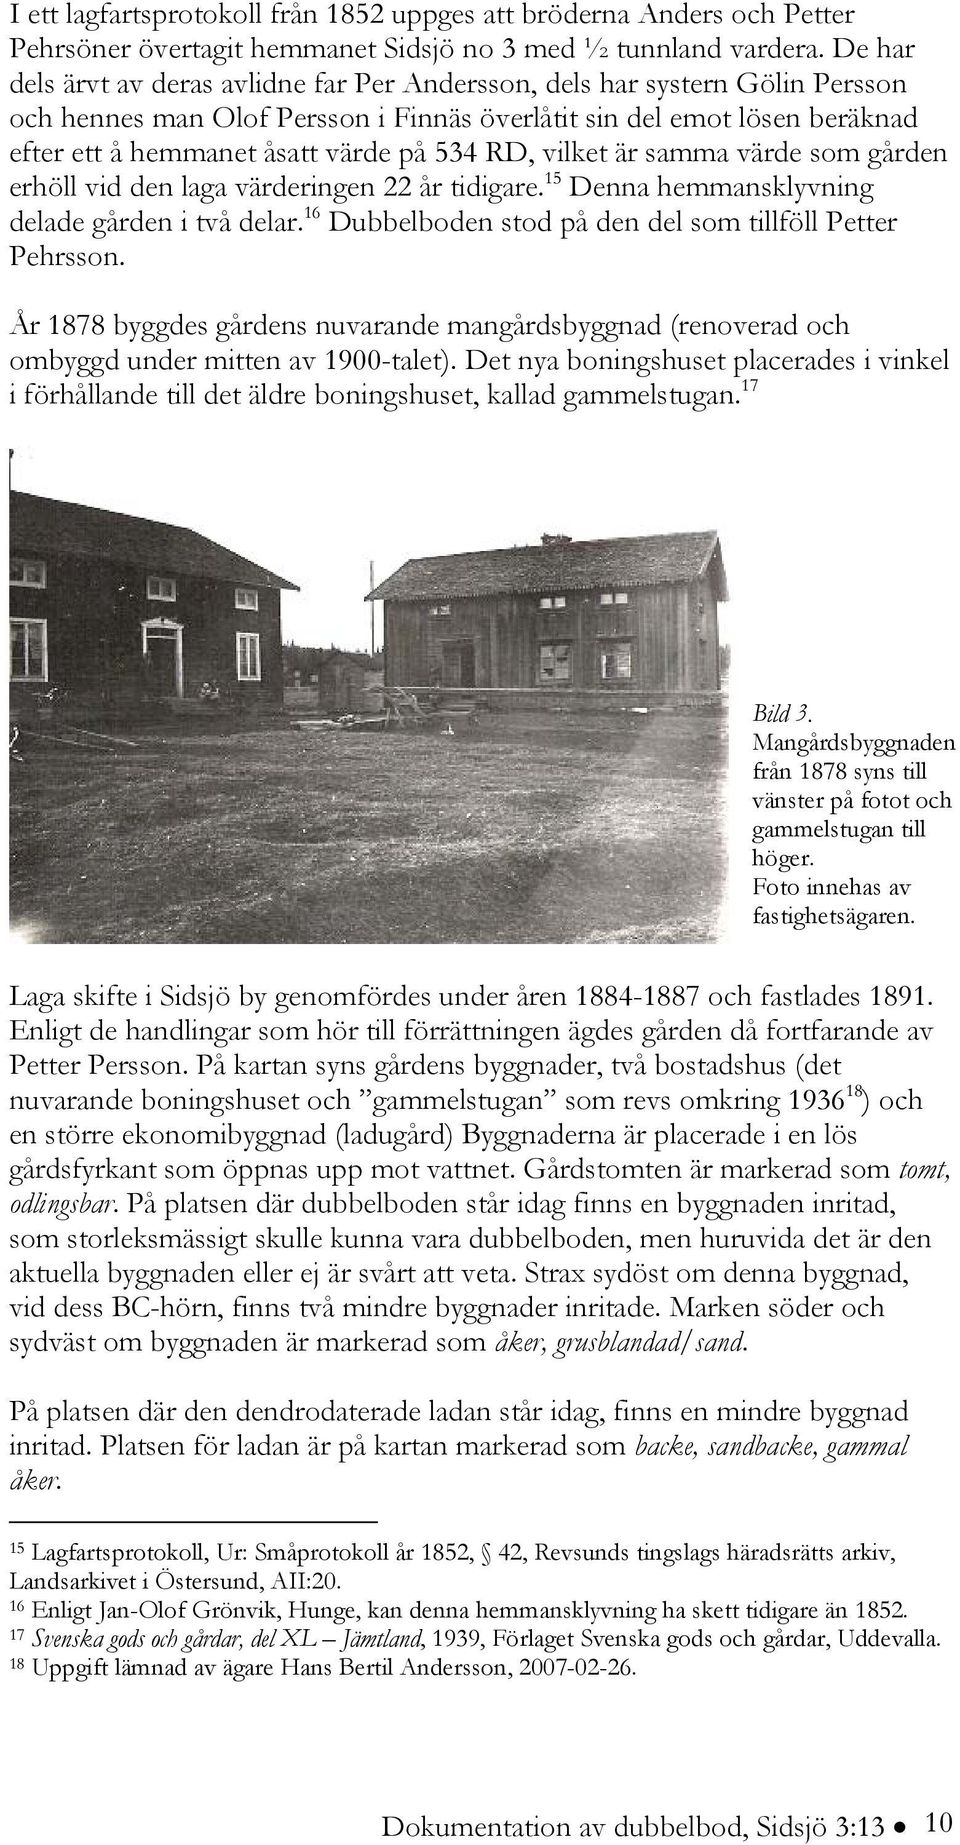 RD, vilket är samma värde som gården erhöll vid den laga värderingen 22 år tidigare. 15 Denna hemmansklyvning delade gården i två delar. 16 Dubbelboden stod på den del som tillföll Petter Pehrsson.